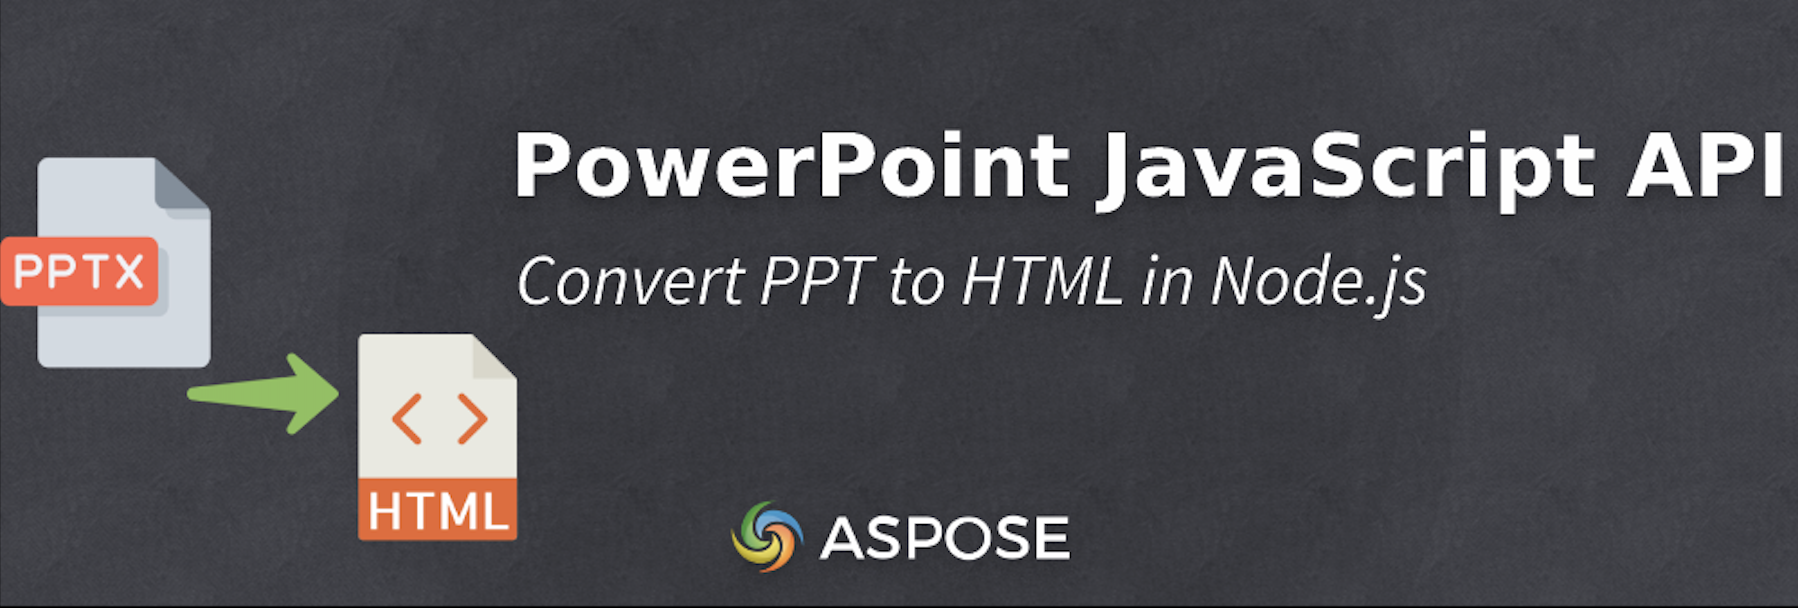 Перетворення PPT на HTML у Node.js - PowerPoint JavaScript API